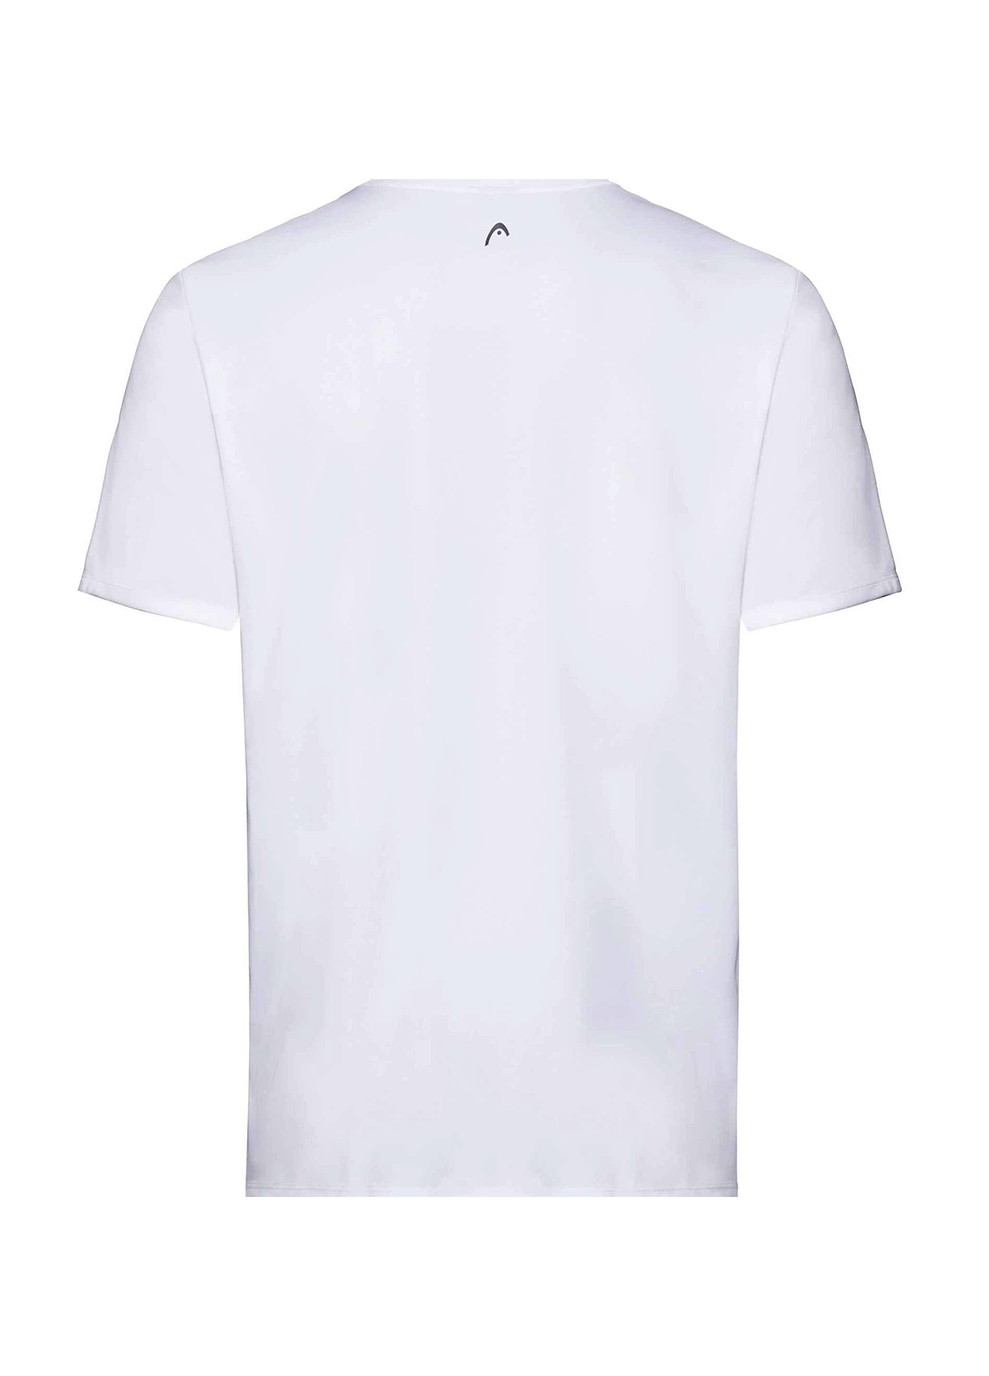 Біла демісезонна футболка дит. easy t-shirt boy wh Head